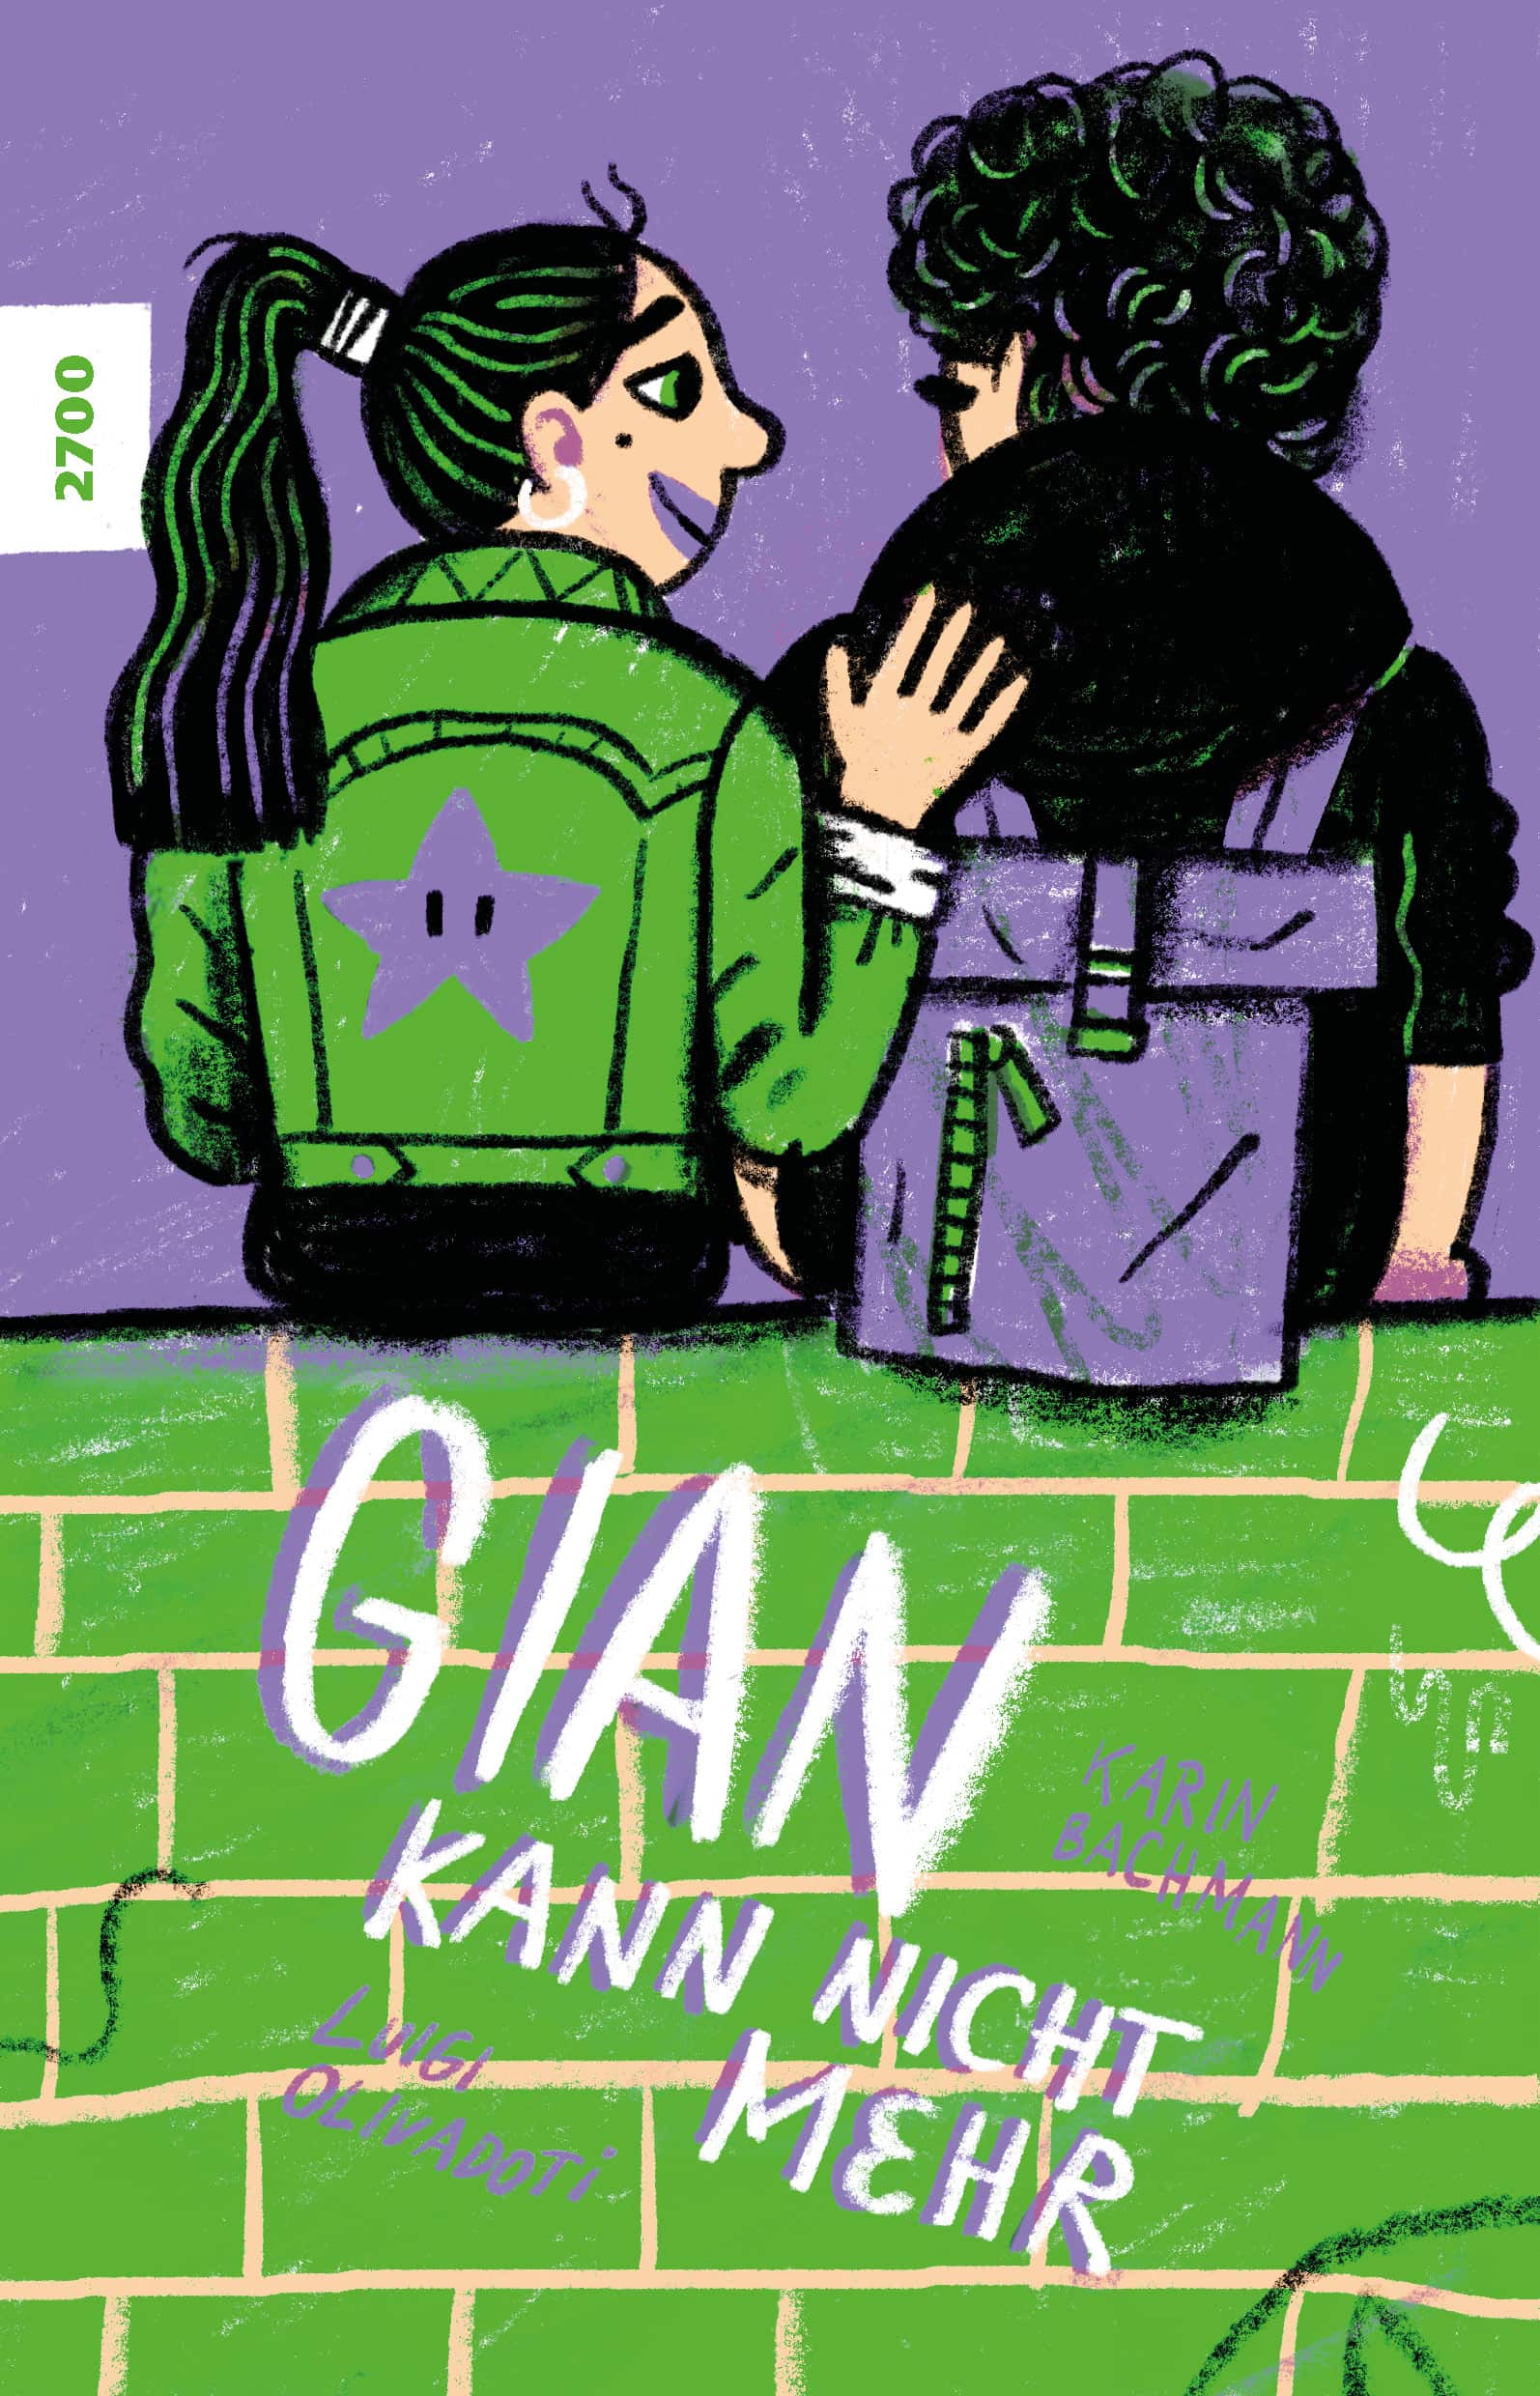 Gian kann nicht mehr, ein Jugendbuch von Karin Bachmann, Illustration von Luigi Olivadoti, SJW Verlag, Depression